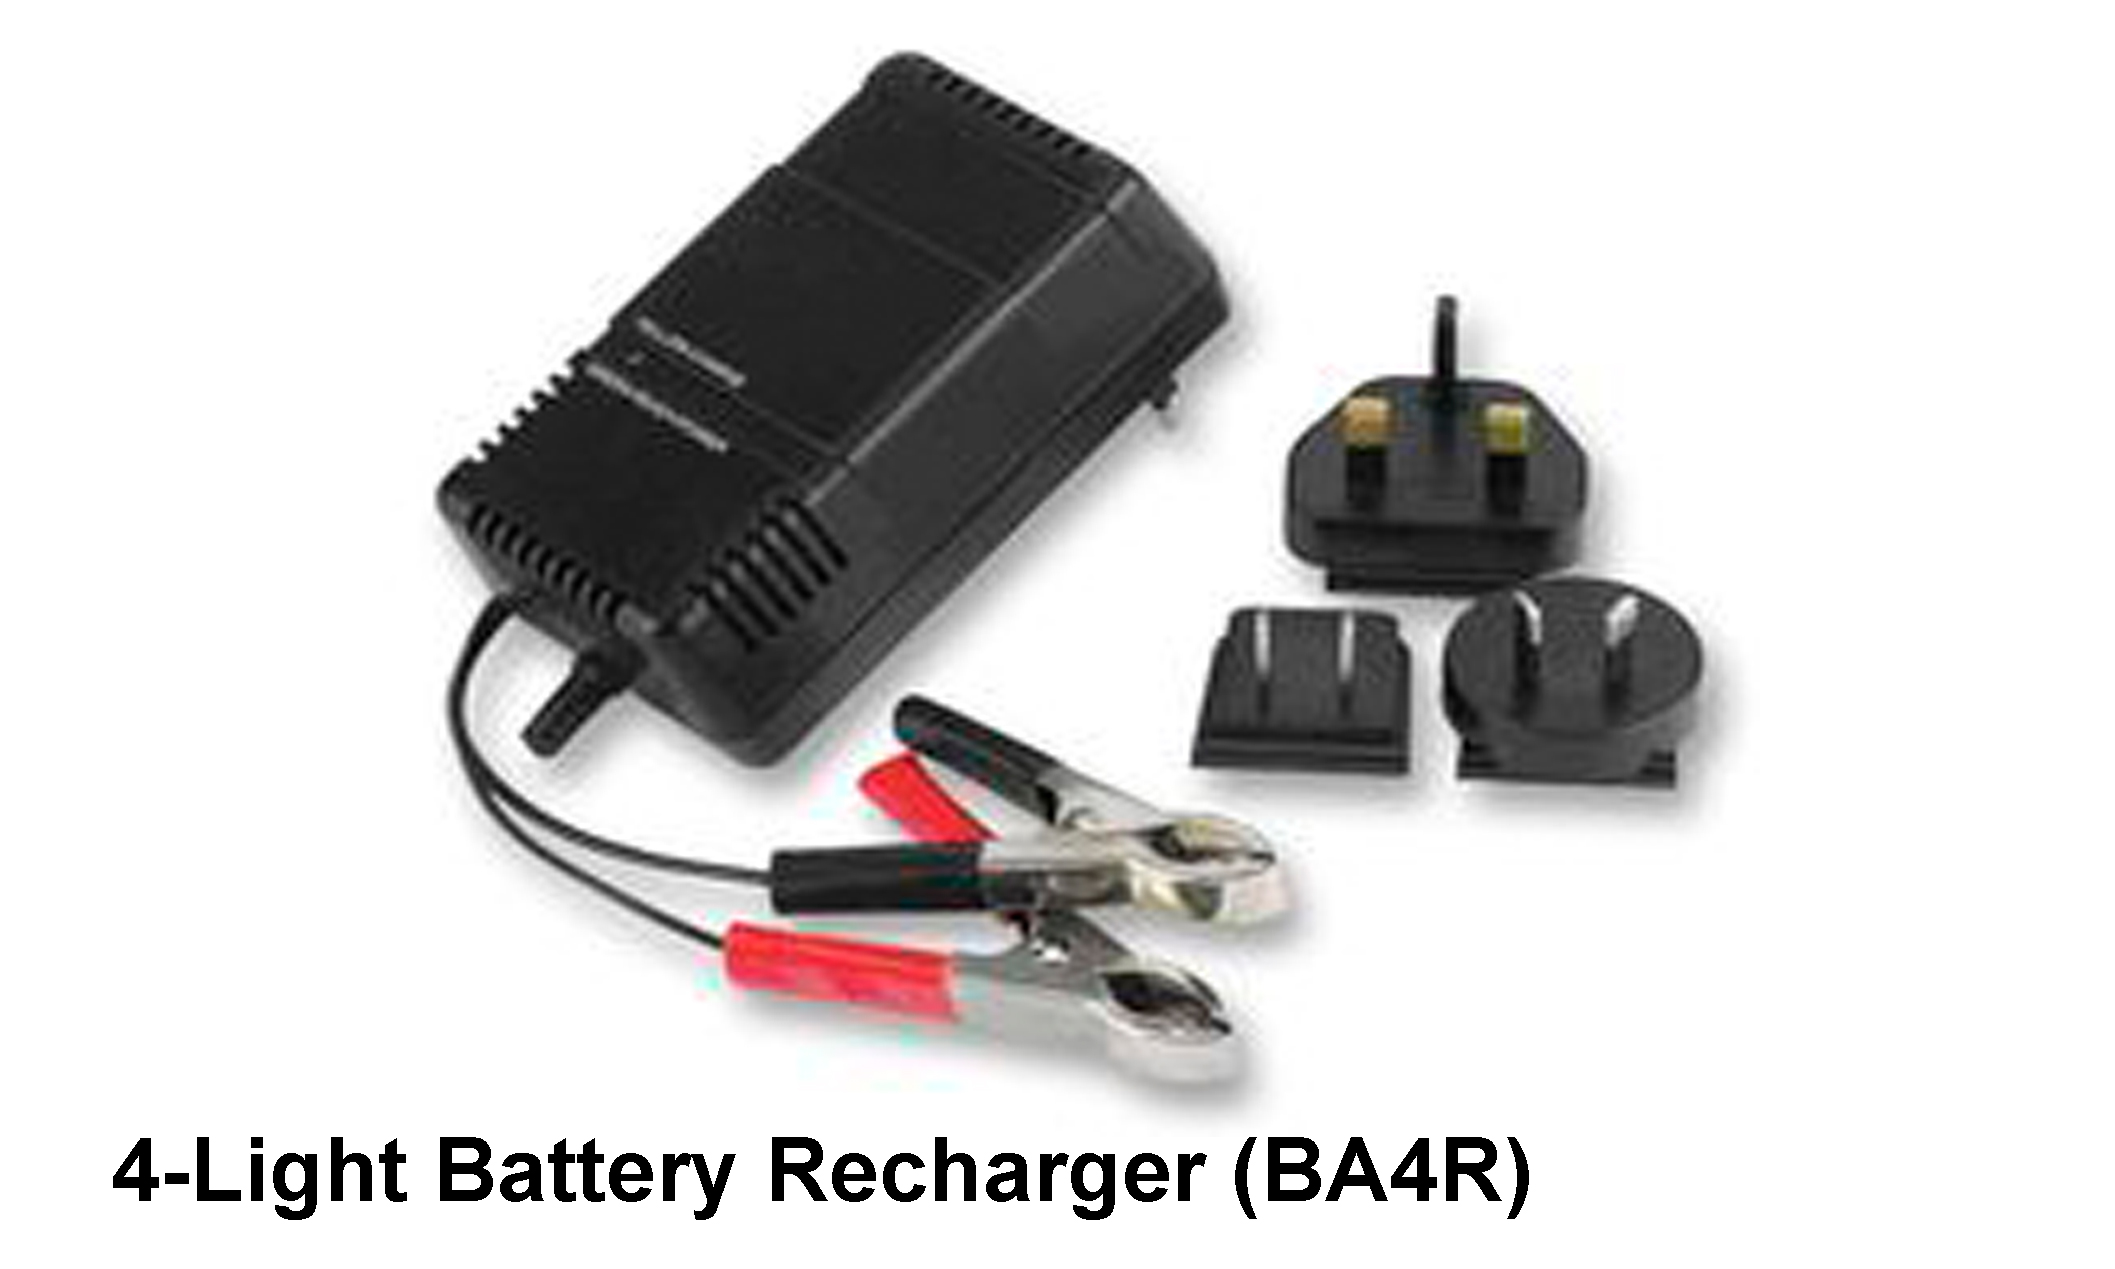 4-light battery recharger